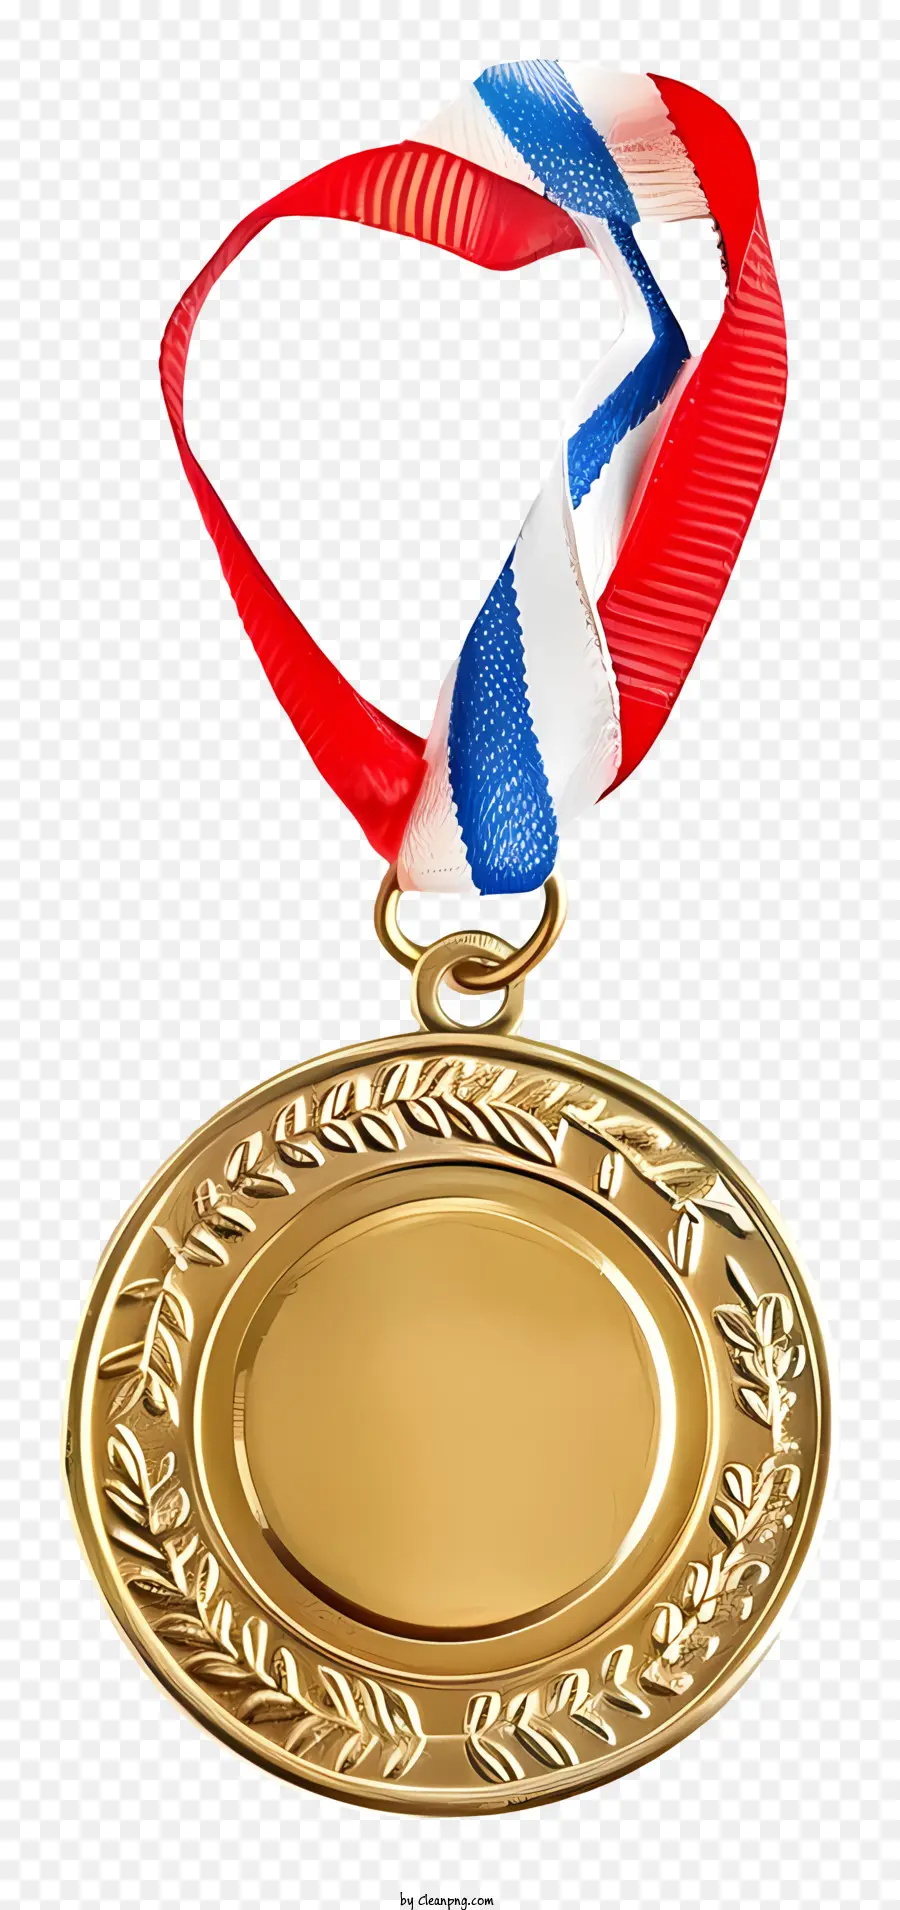 medaglia d'oro - Medaglia militare d'oro con iscrizione USA, 2013